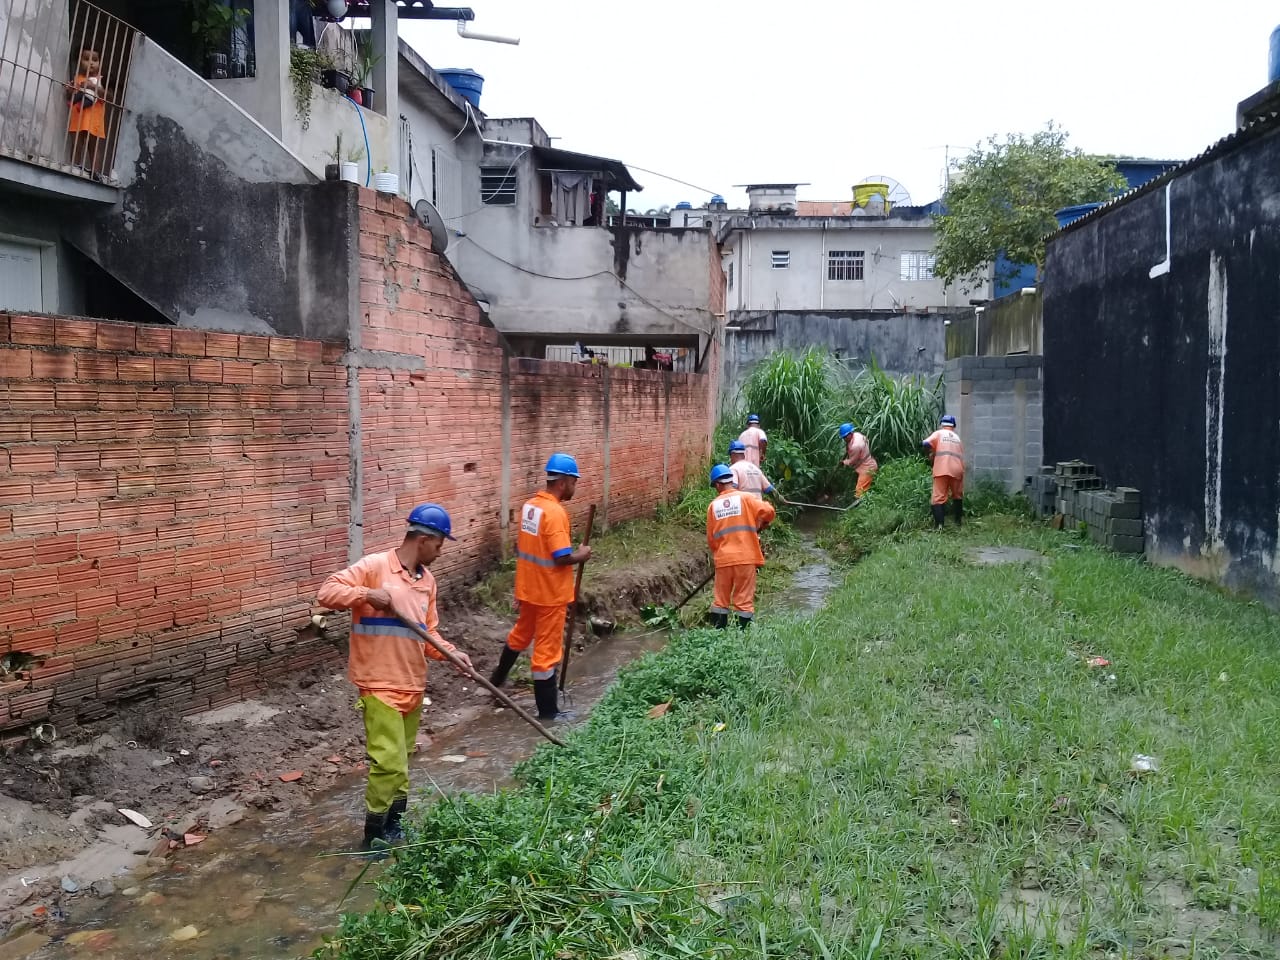 #PraCegoVer - Trabalhadores da Subprefeitura limpam córrego ao lado de uma casa com muro de tijolos, do lado esquerdo. Há outra construção do lado direito.